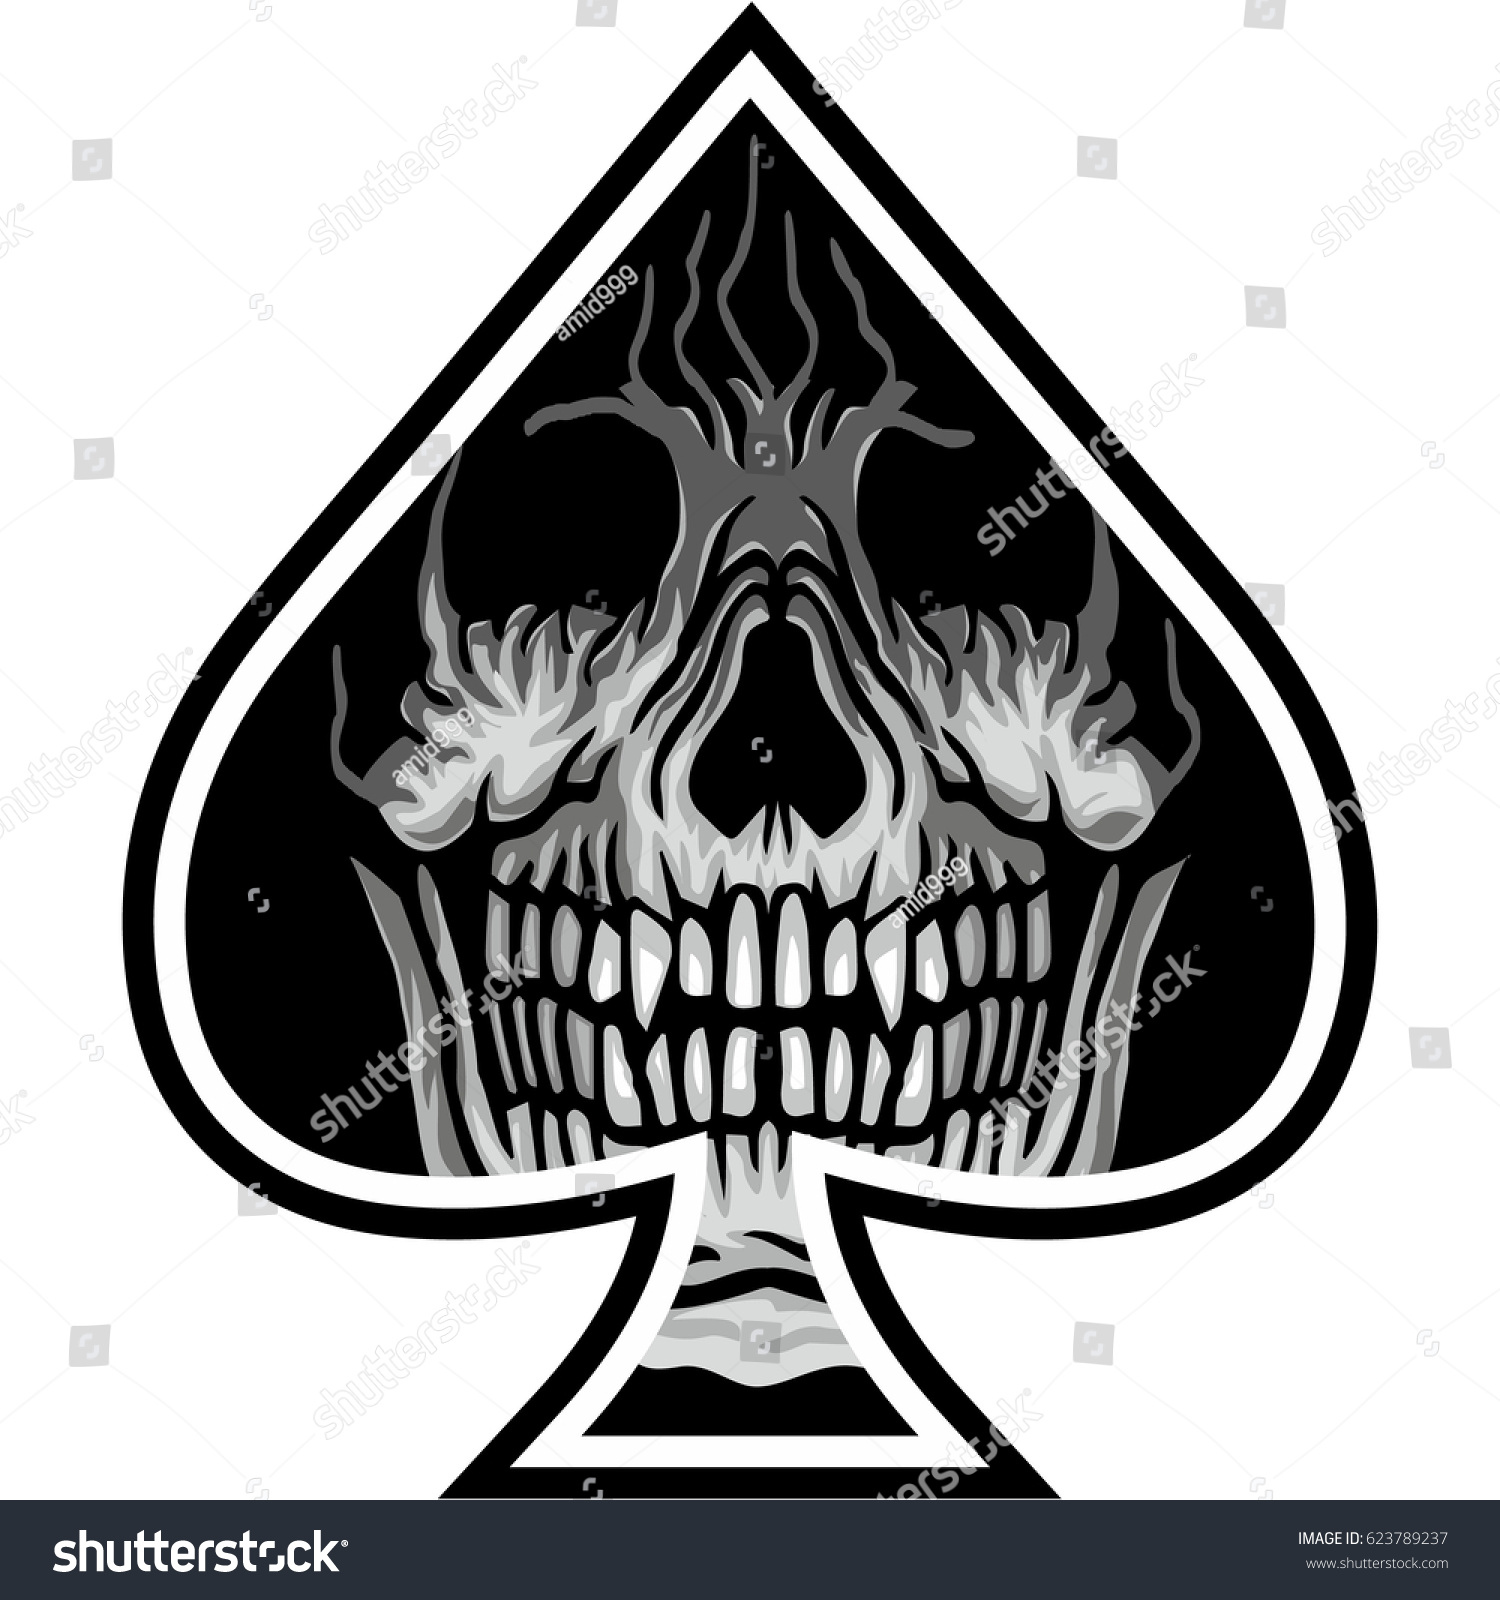 Ace Spades Skull Grunge Vintage Design Stock Vector 623789237 ...